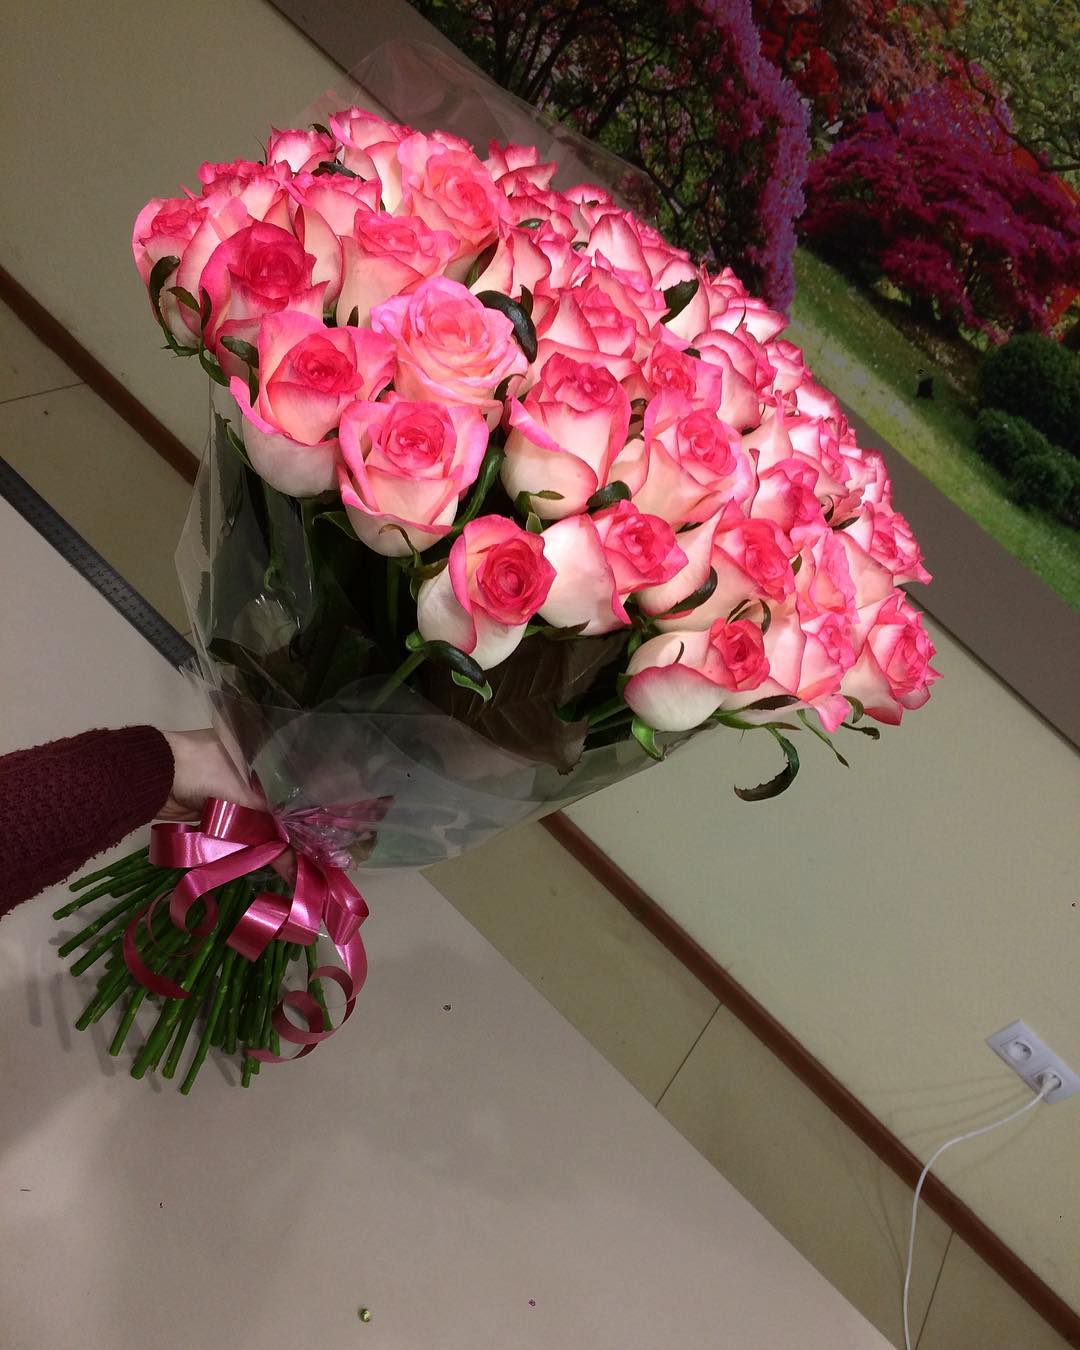 Заказать доставку цветов в ростове на дону на дом можно дарить 5 роз